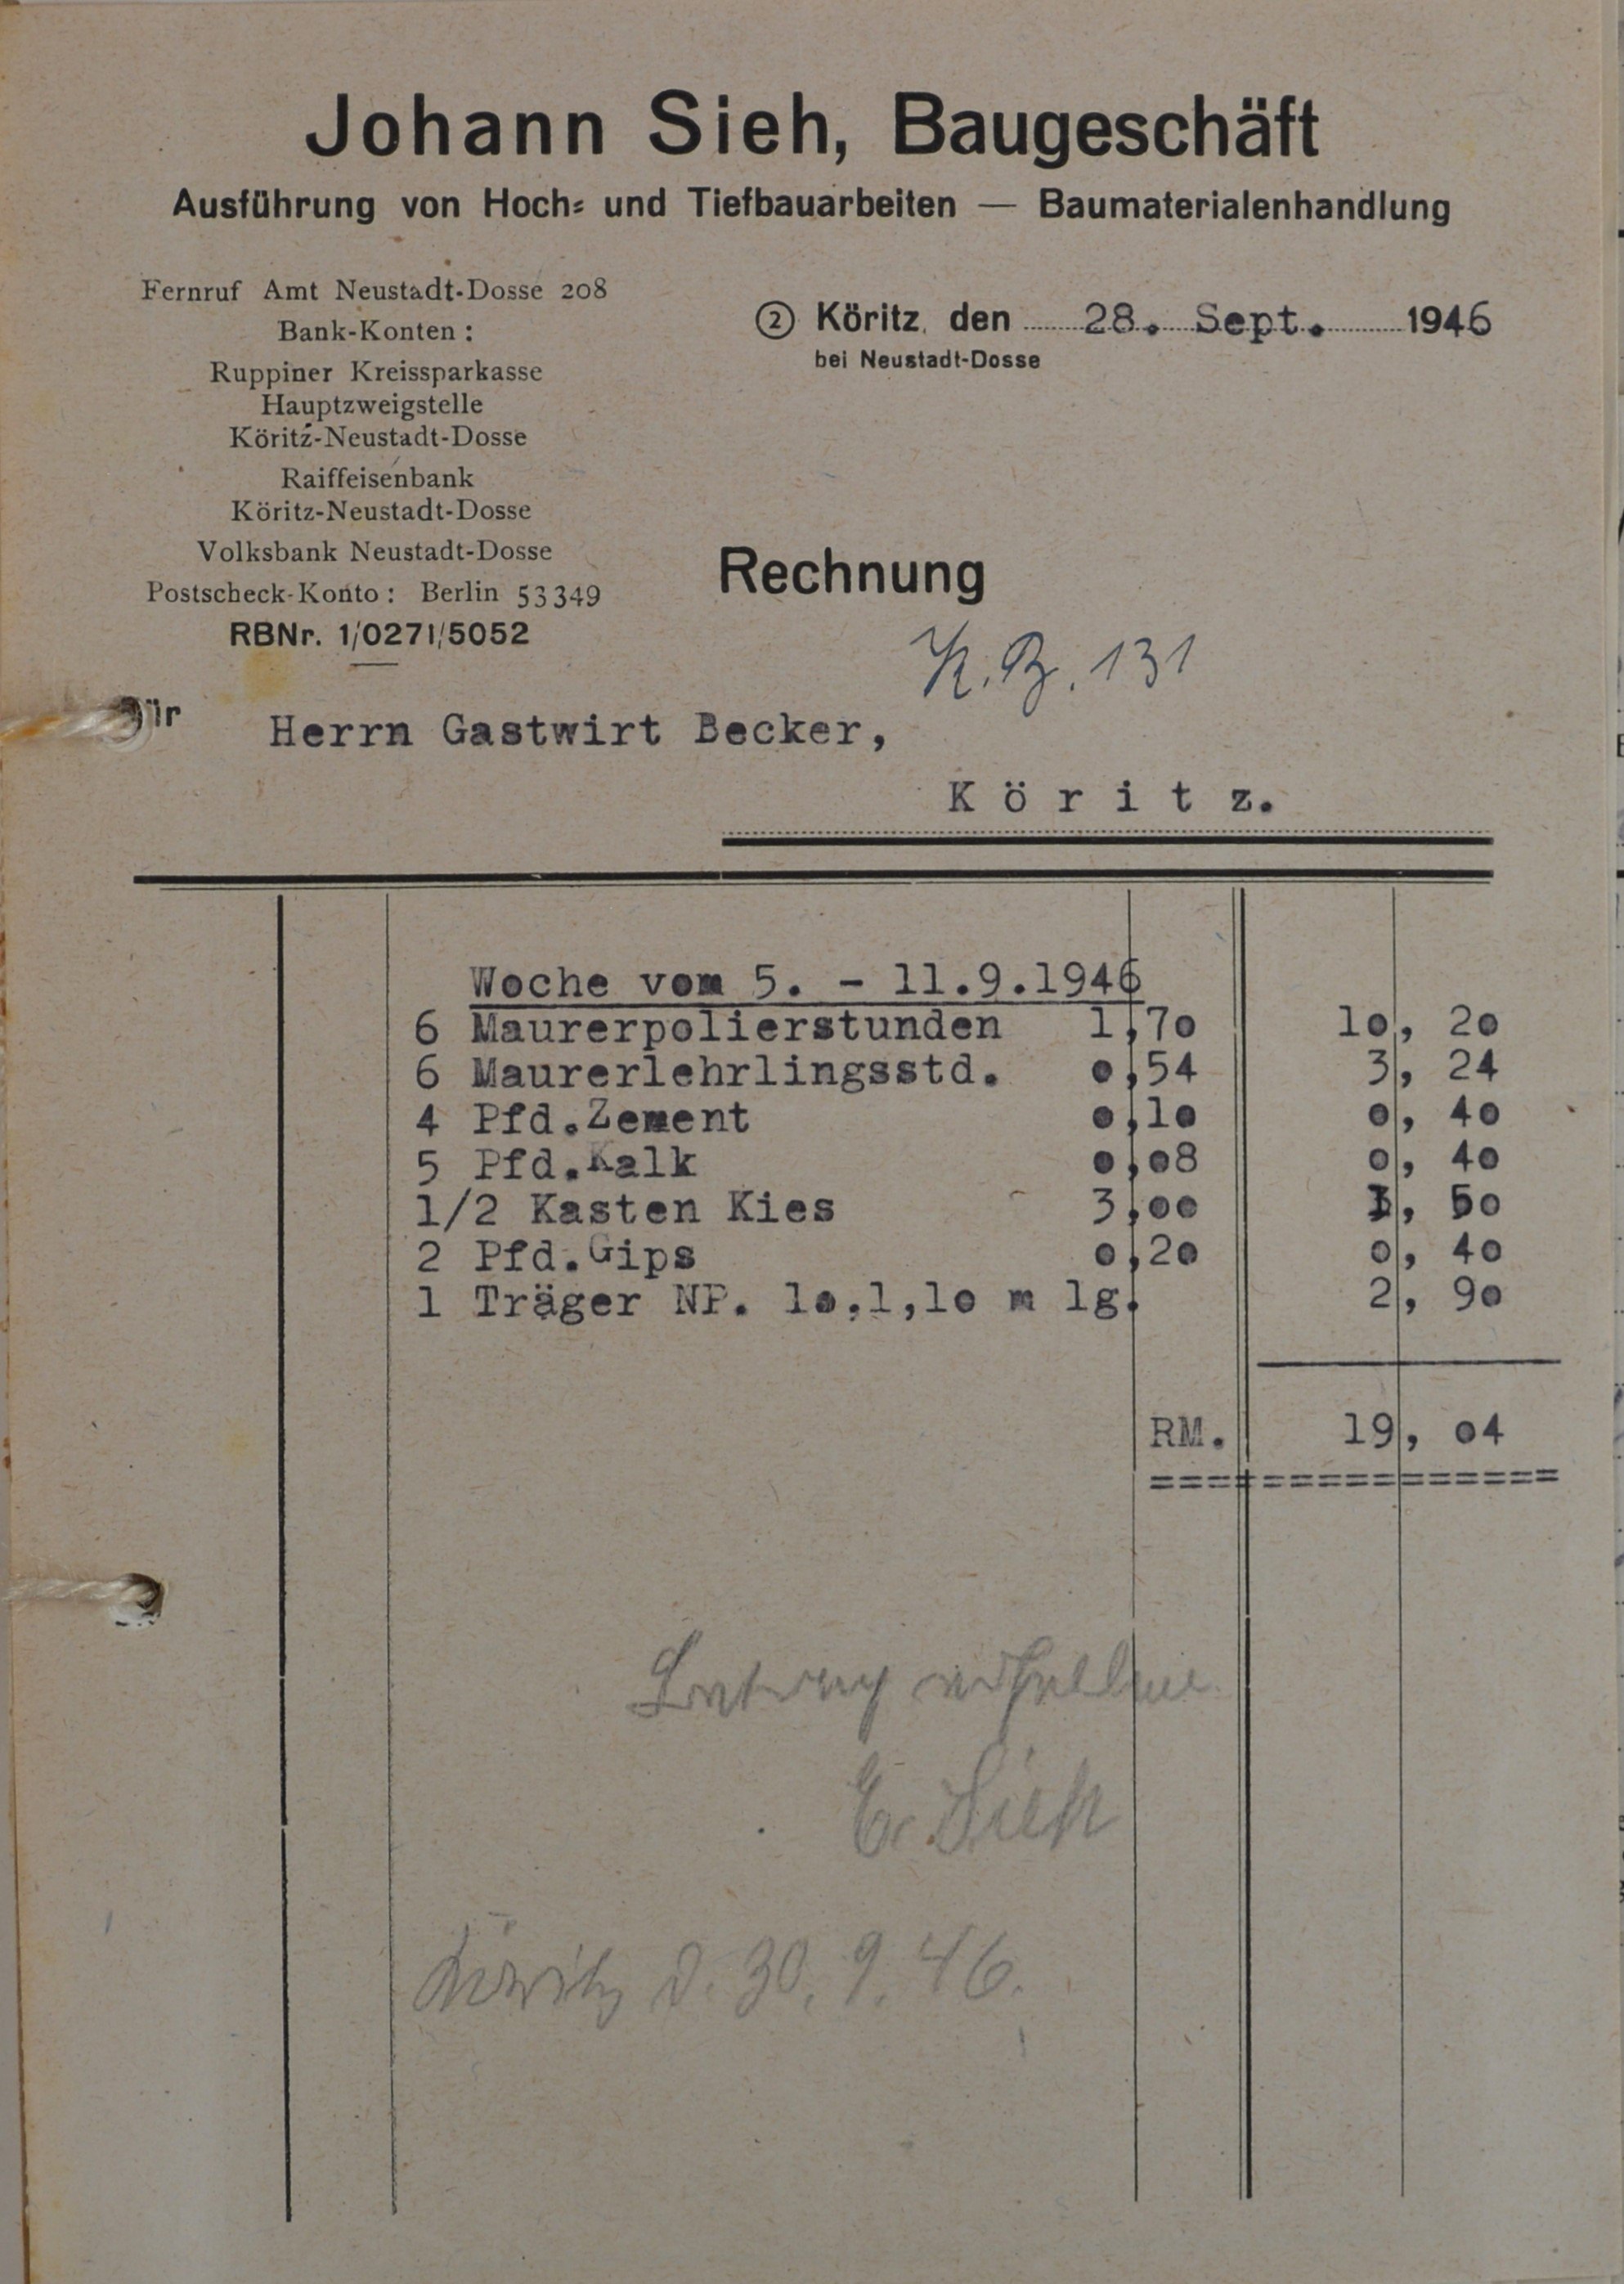 Rechnung von dem Bauunternehmer Johann Sieh aus Köritz für Wilhelm Breitkreuz (DDR Geschichtsmuseum im Dokumentationszentrum Perleberg CC BY-SA)